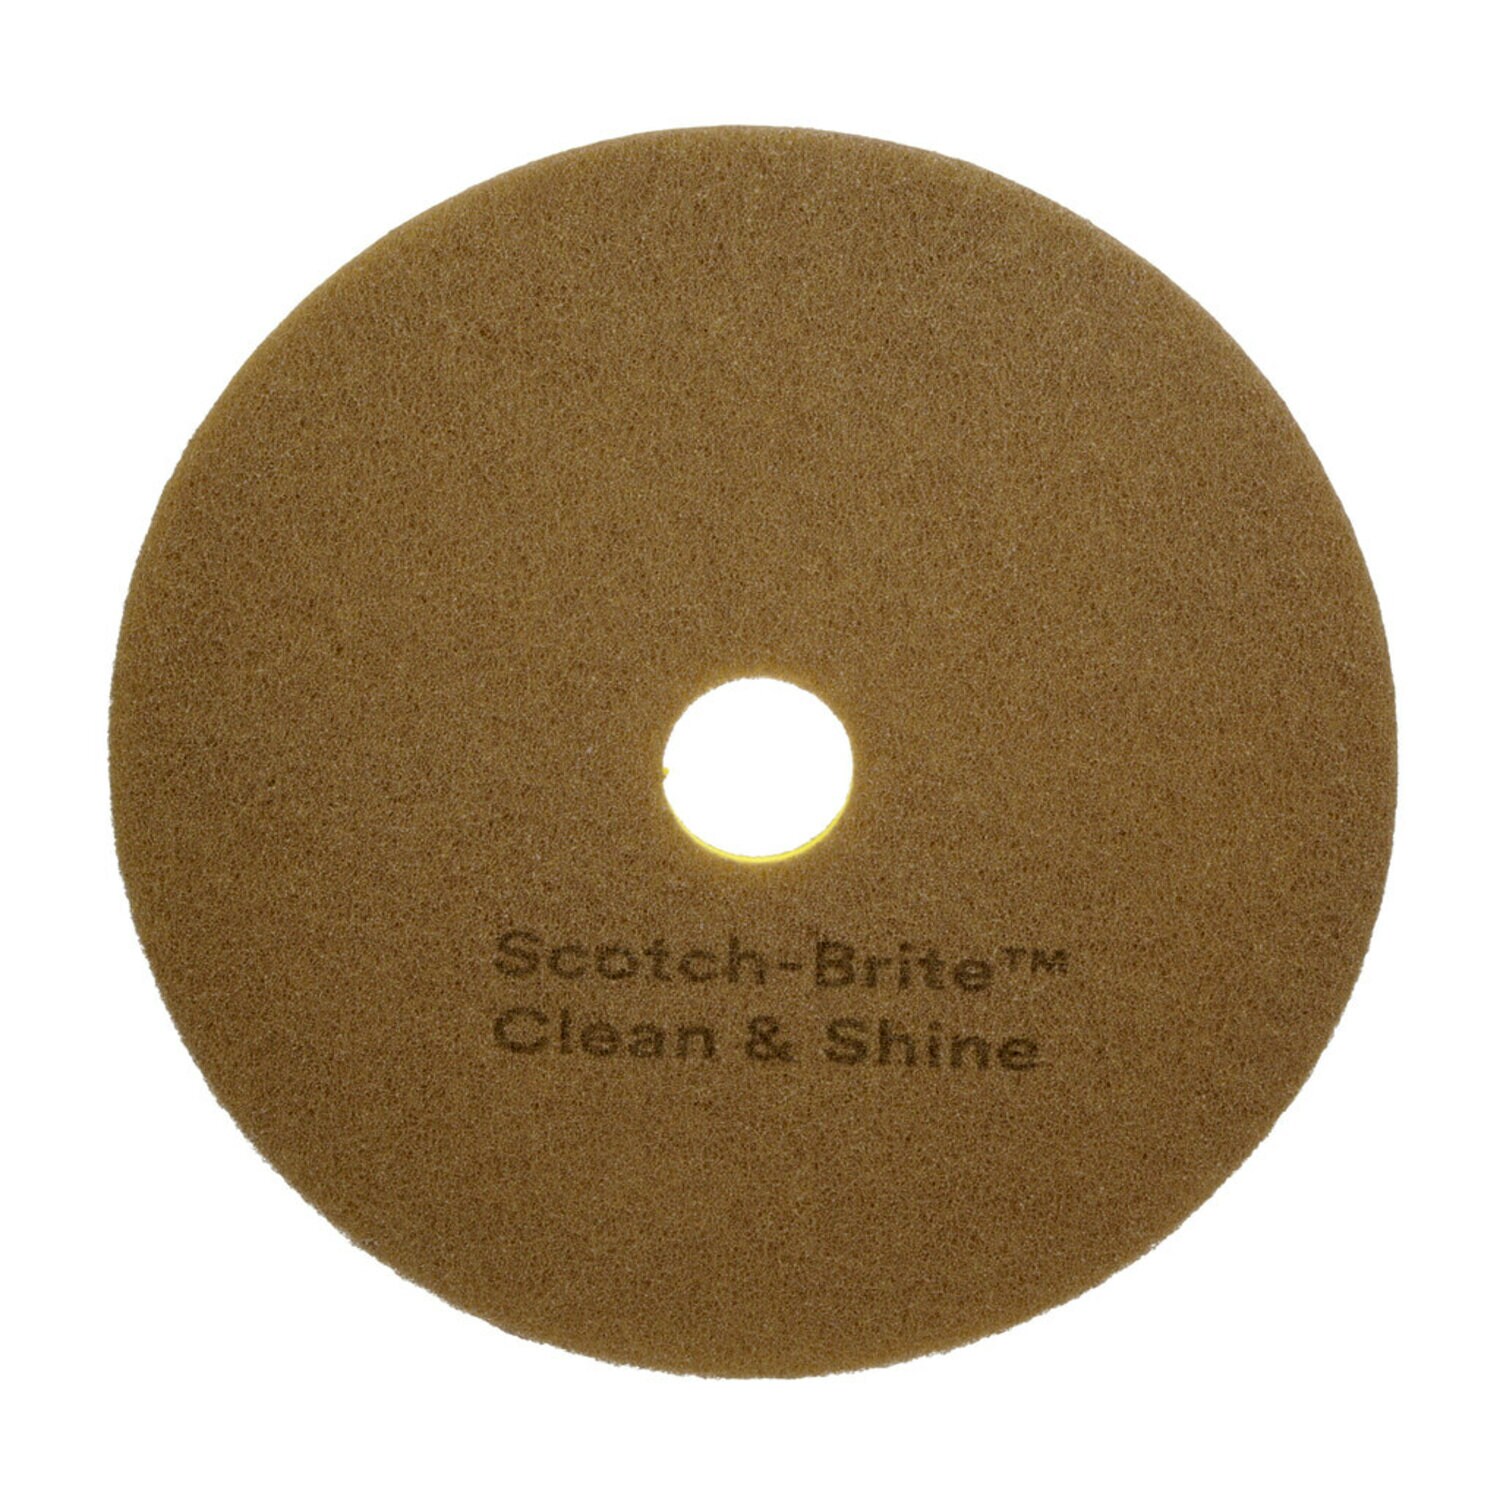 7100147996 - Scotch-Brite Clean & Shine Pad, 22 in, 5/Case